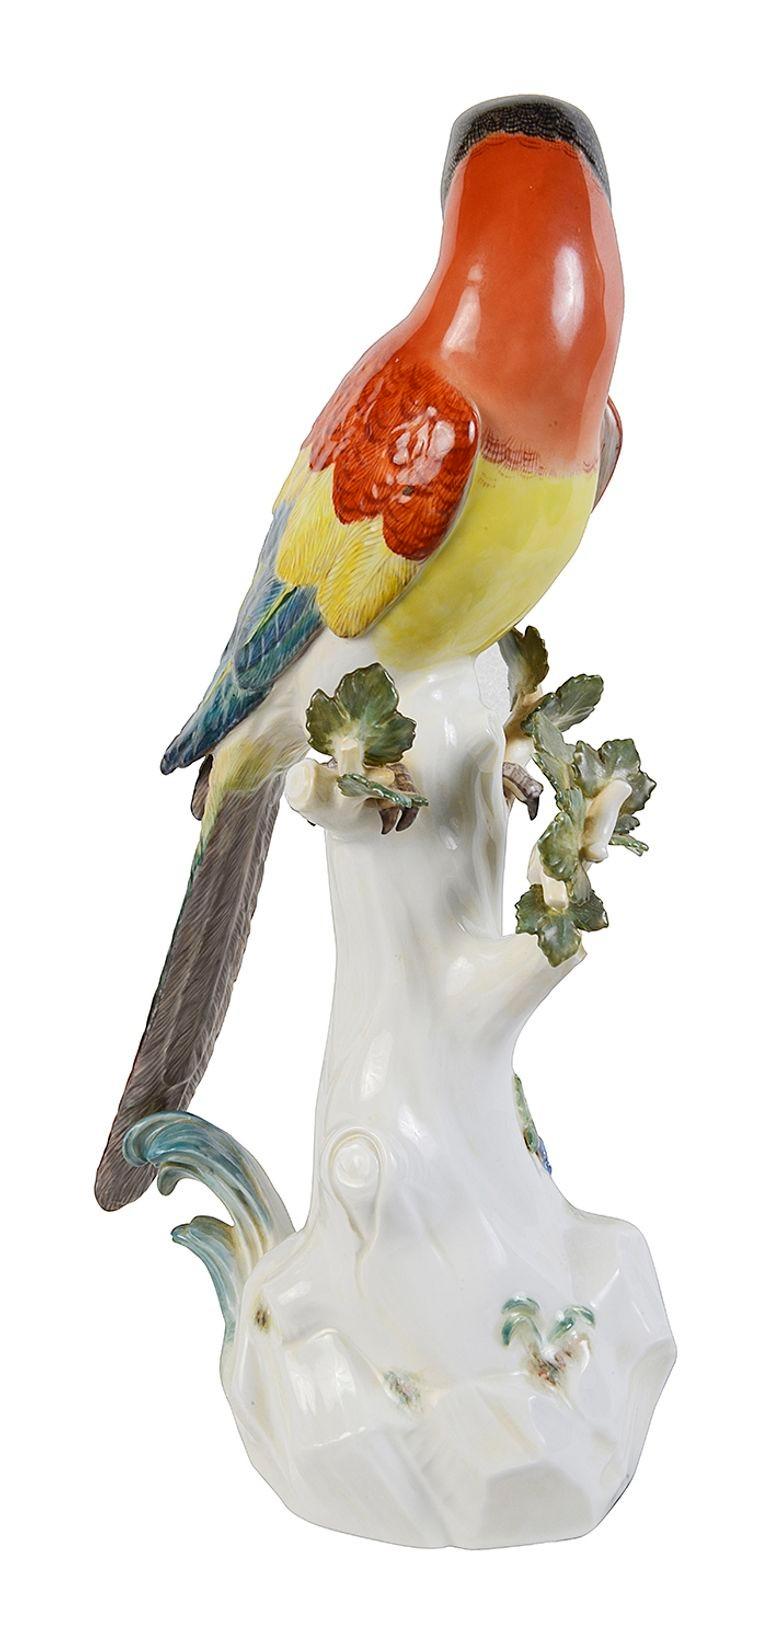 Eine bezaubernde Meissener Porzellanfigur aus dem späten 19. Jahrhundert, die einen auf einem Baumstumpf sitzenden Papagei darstellt. Sie hat eine wunderbare, kräftige Färbung und eine blaue Signatur mit gekreuzten Schwertern auf dem